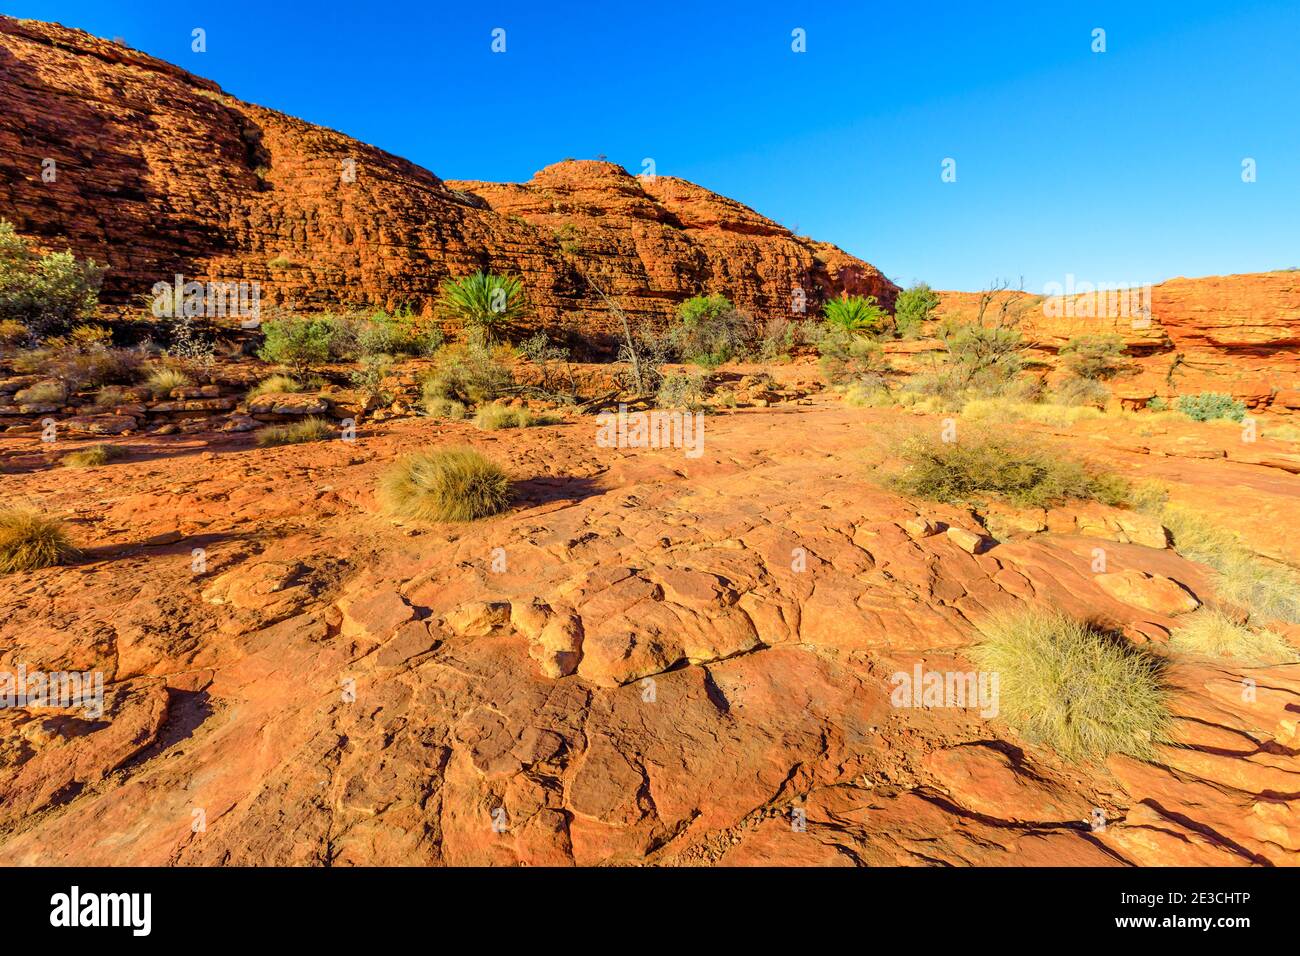 Die malerischen Sandsteinkuppen, die Lost City genannt werden, befinden sich am Anfang des Kings Canyon Rim im Watarrka National Park, Zentralaustralien. Kultige Attraktion Platz in Stockfoto